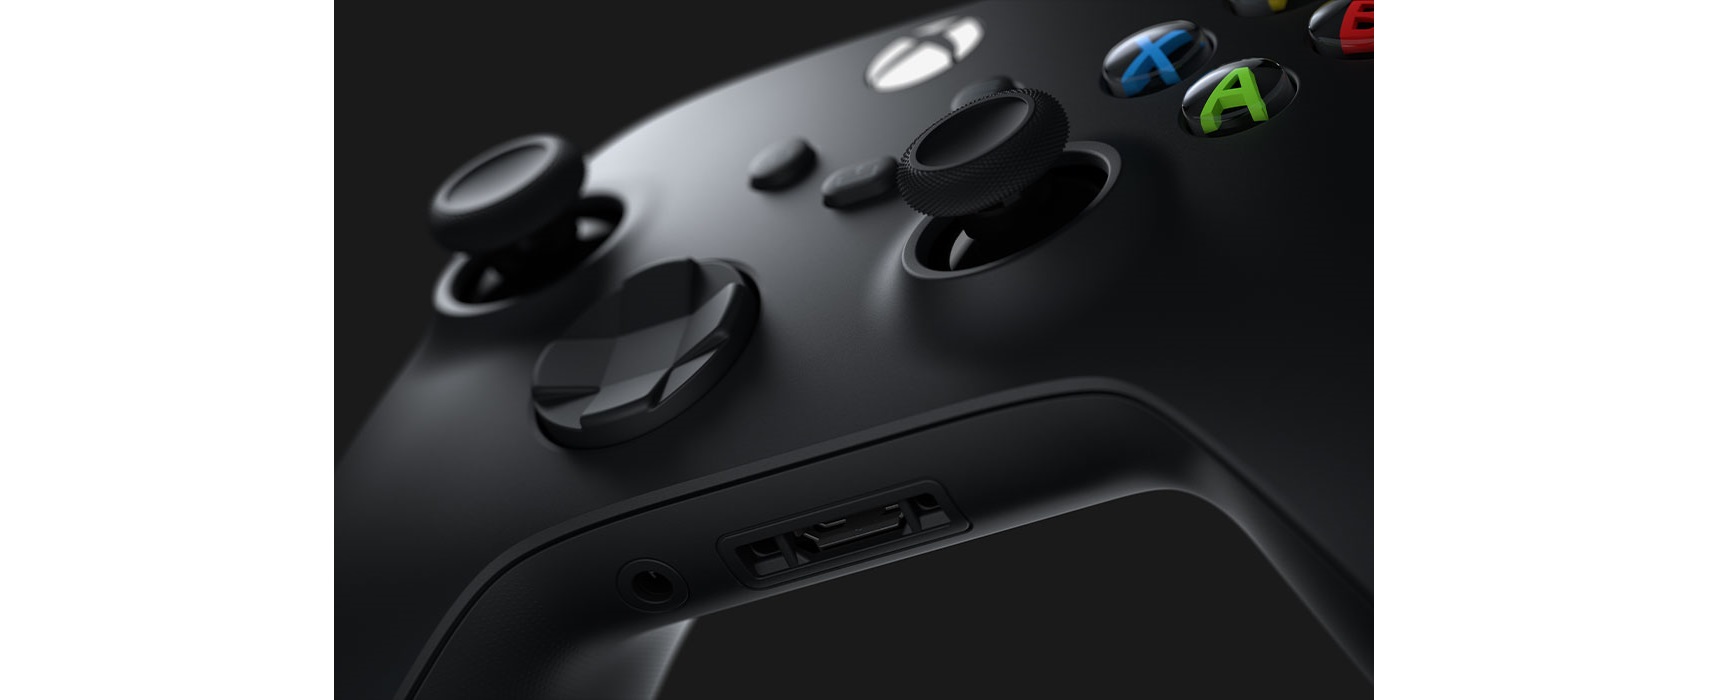 Tay cầm chơi game Xbox Series X Controller - Carbon Black + USB-C Cable - Hàng chính hãng tương thích với nhiều thiết bị